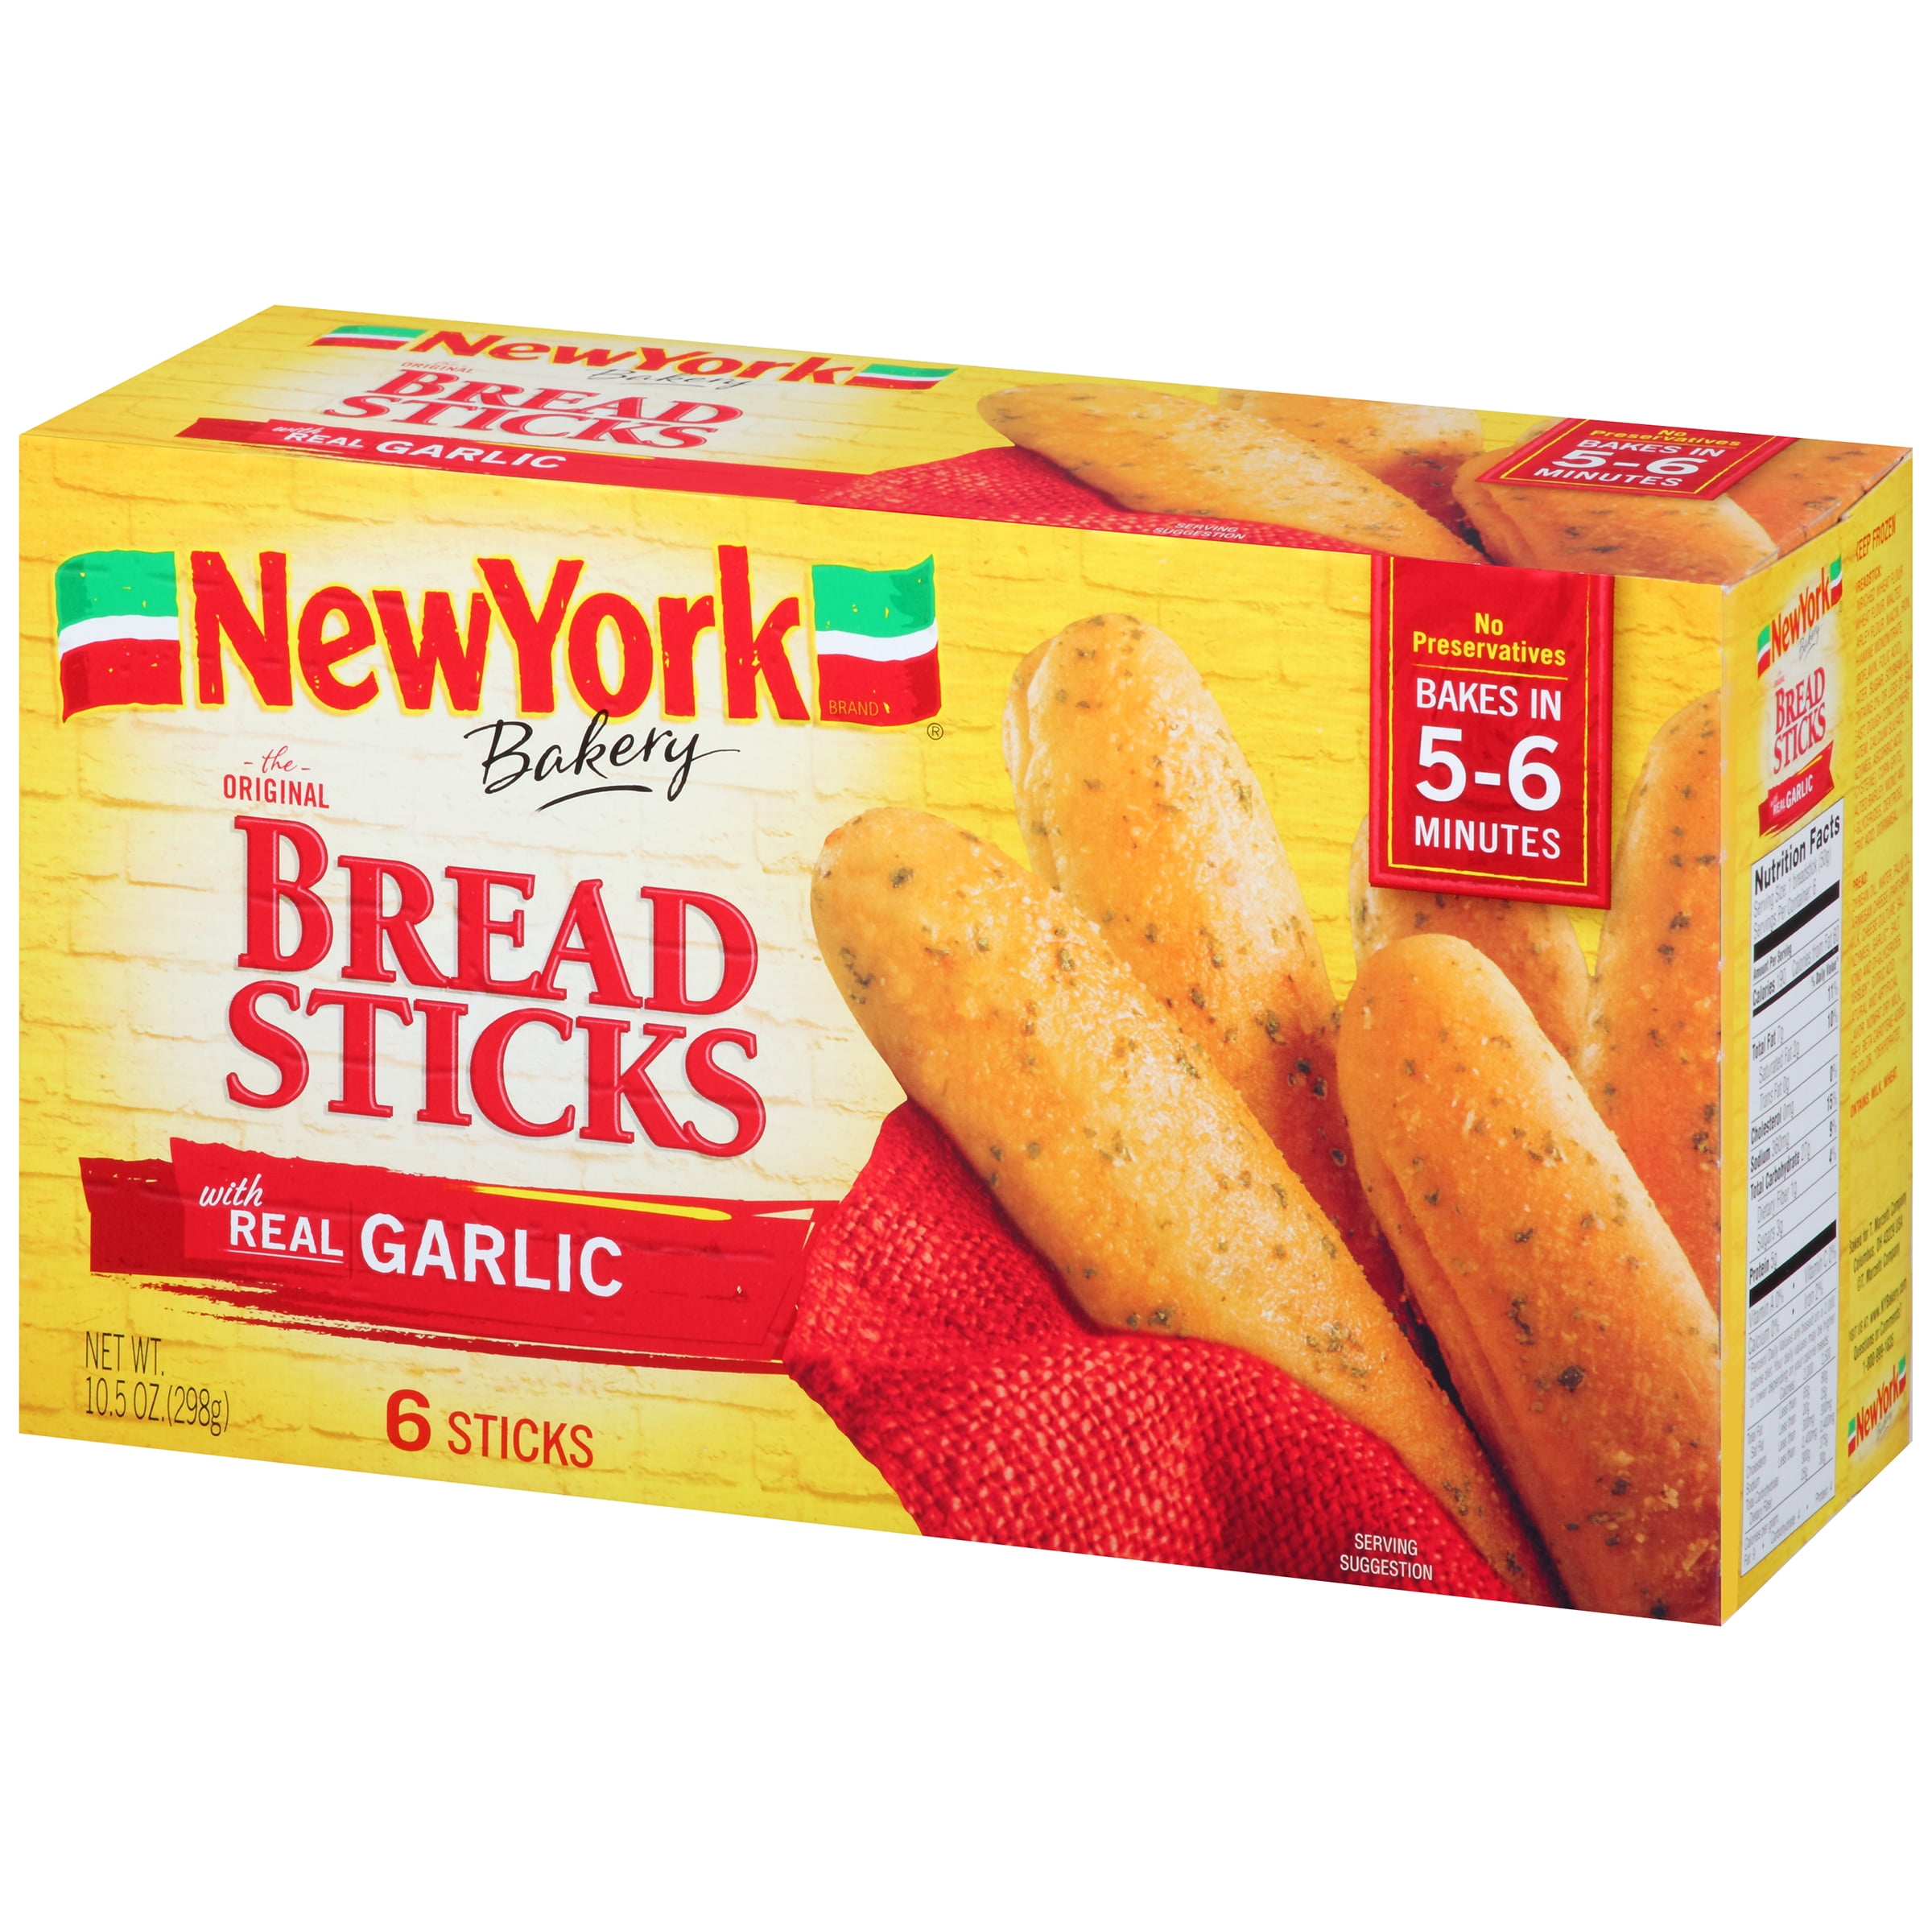 New York Bakery Original Bread Sticks With Real Garlic 6 Sticks Walmart Com Walmart Com